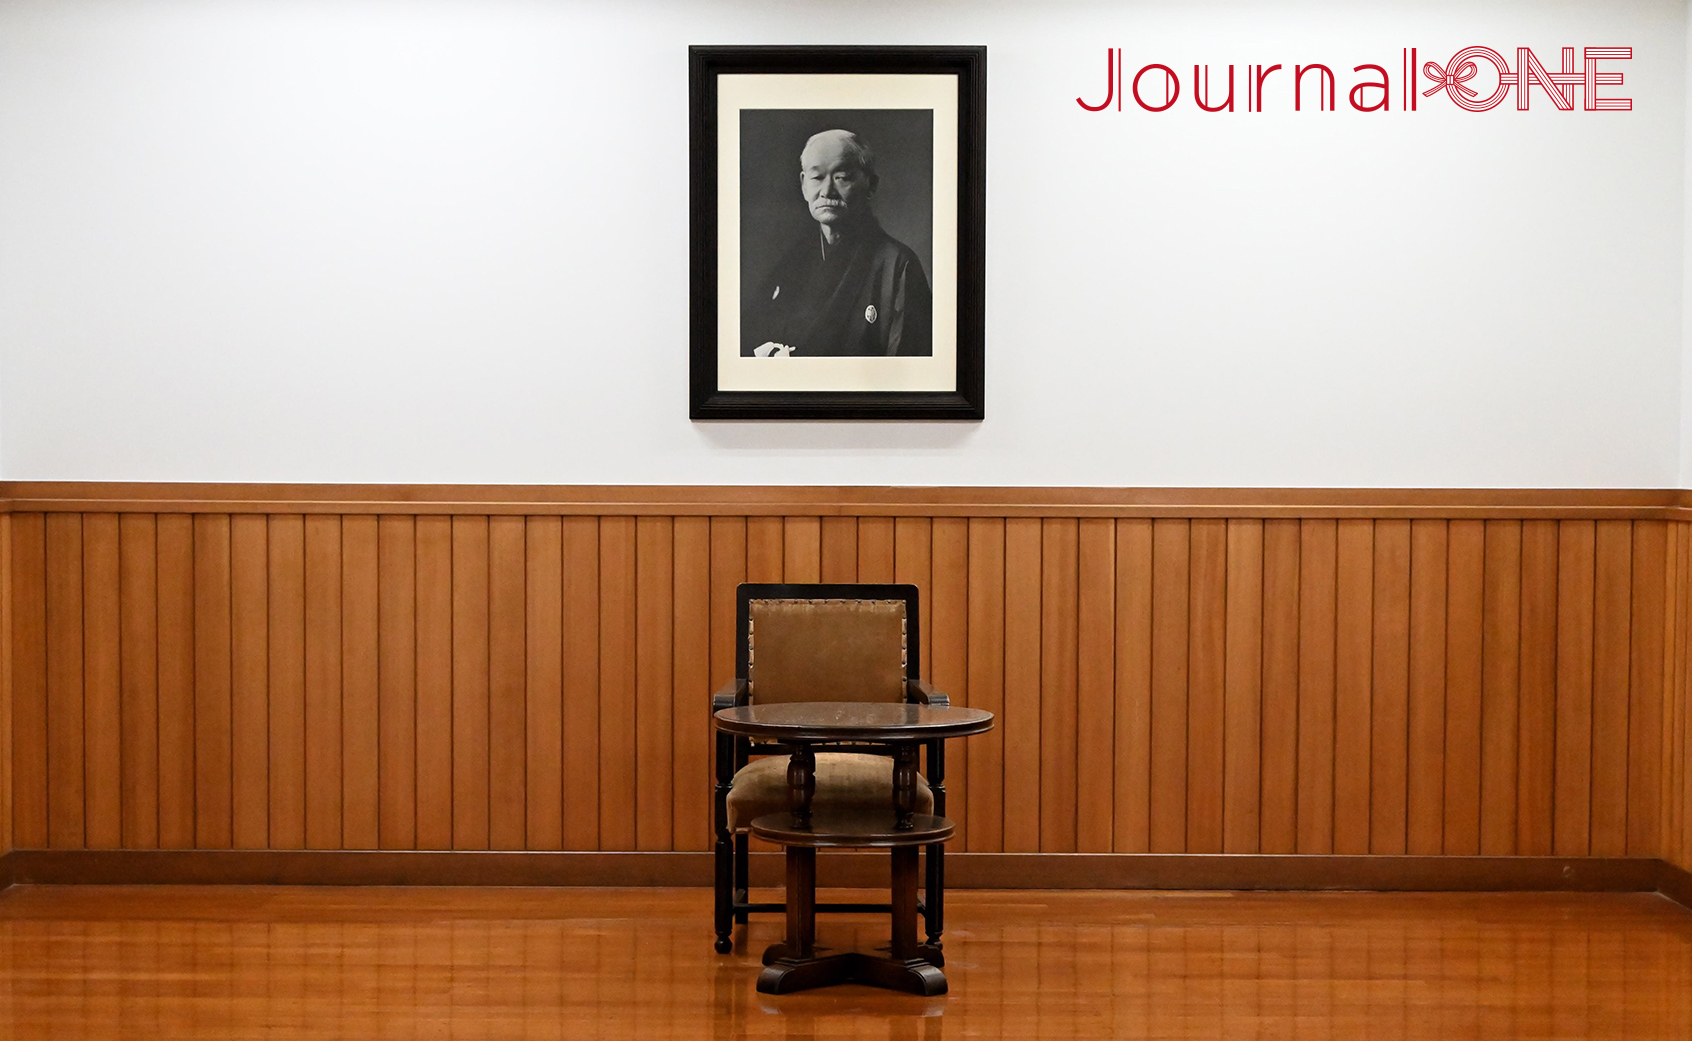 柔道の総本山・講道館の大道場にある嘉納治五郎師範のお写真と椅子-Journal-ONE撮影